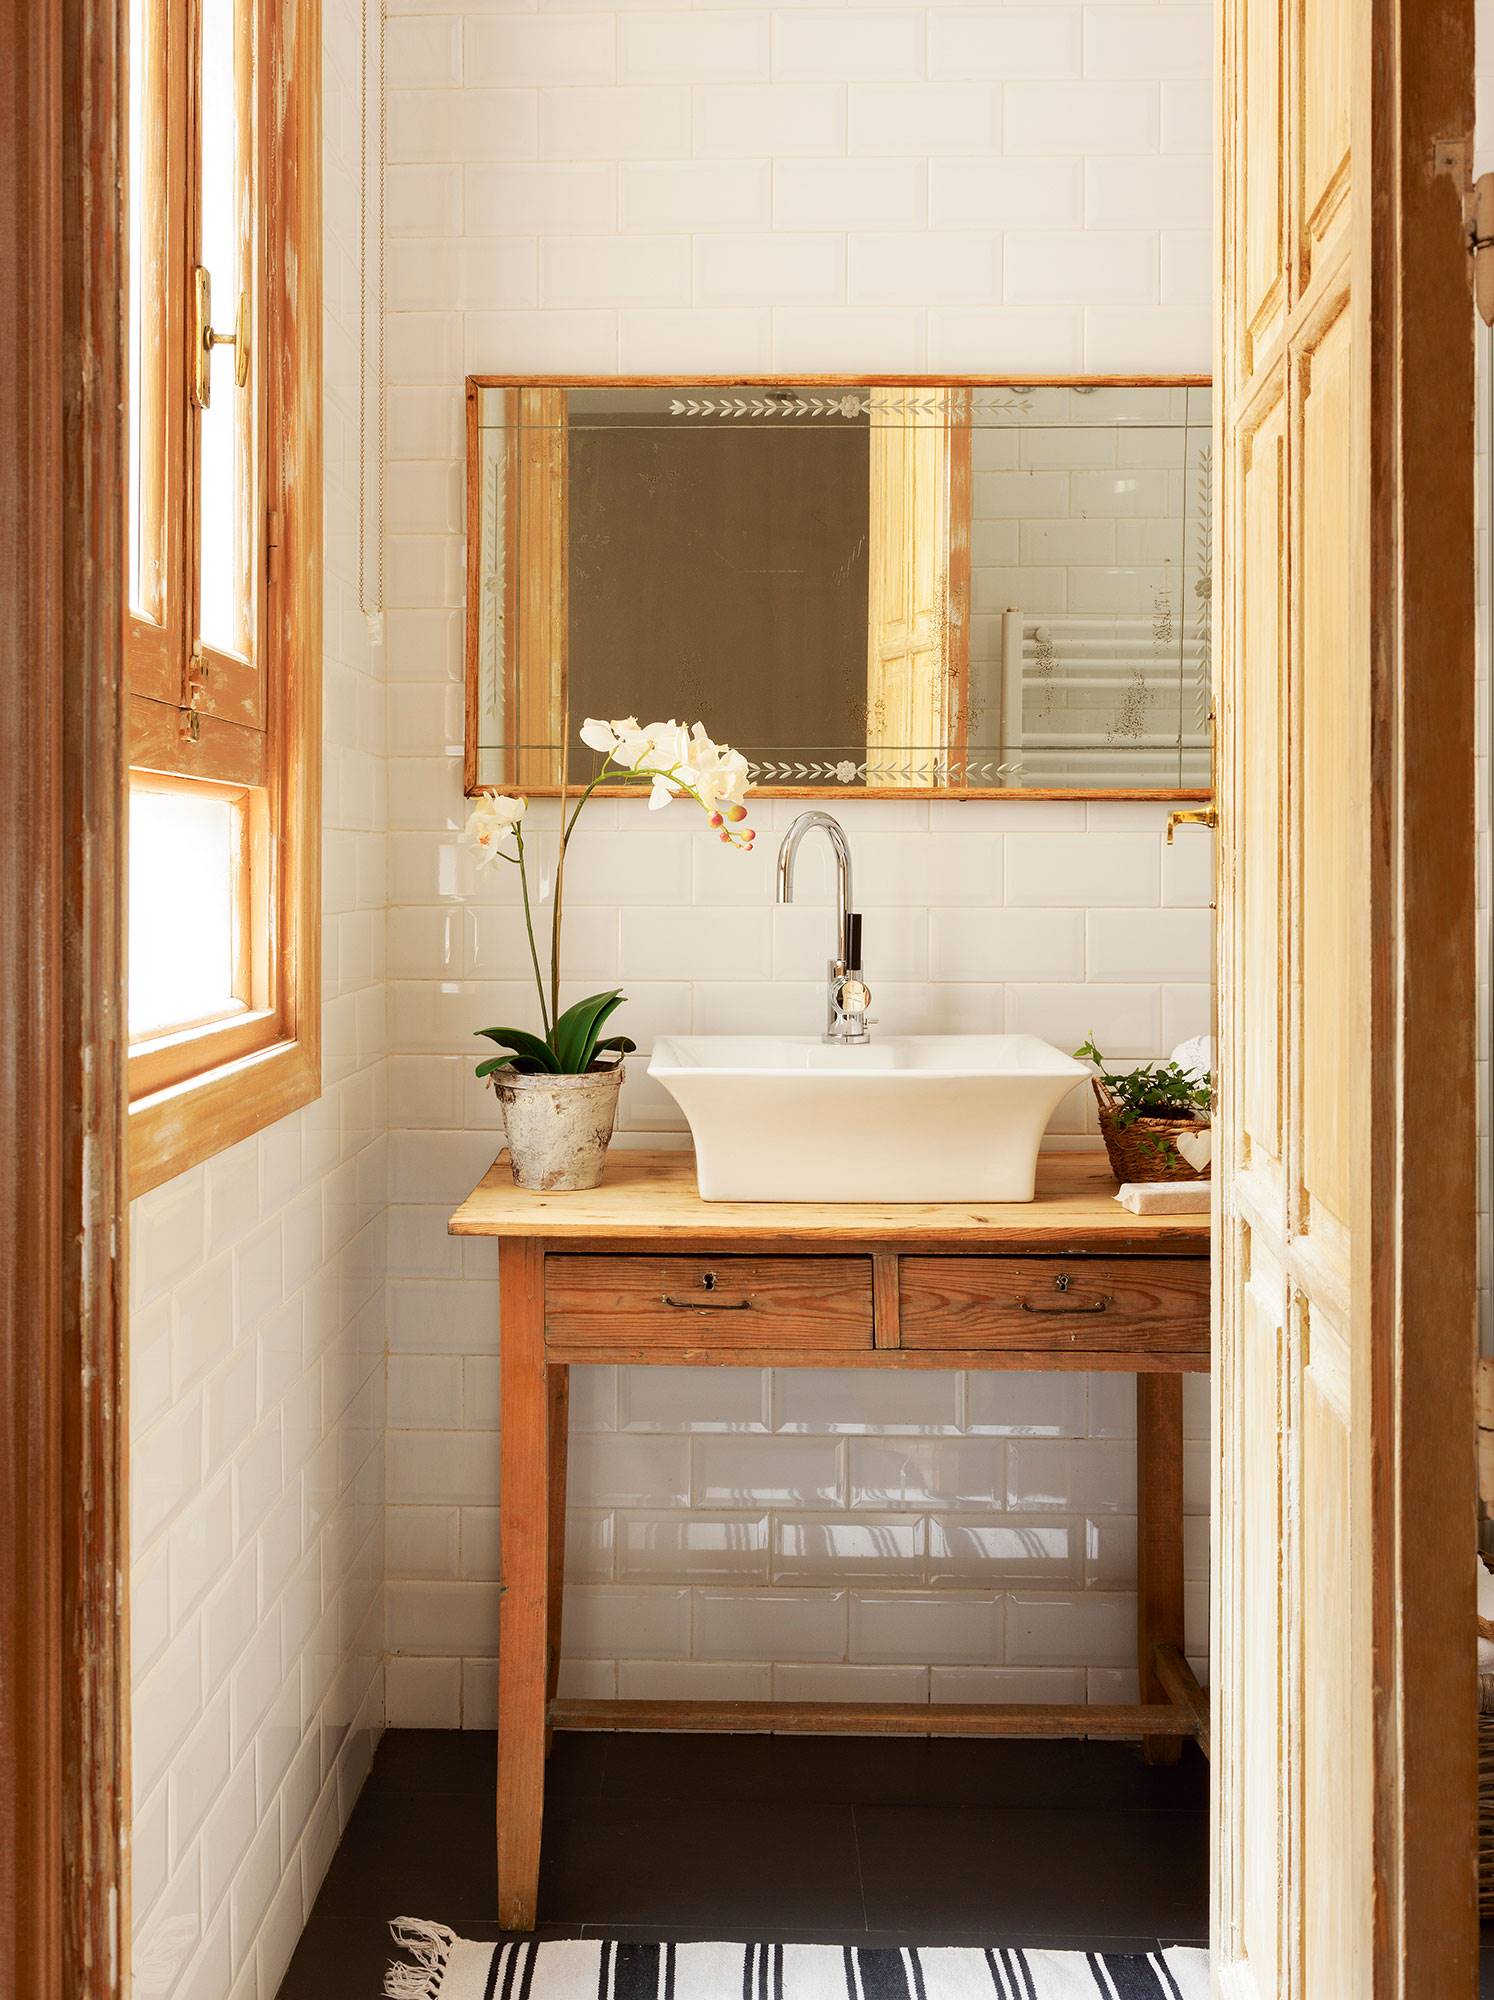 Baño pequeño de estilo rústico con azulejos tipo metro blancos, espejo antiguo con marco de madera y mesa recuperada de madera 00518259